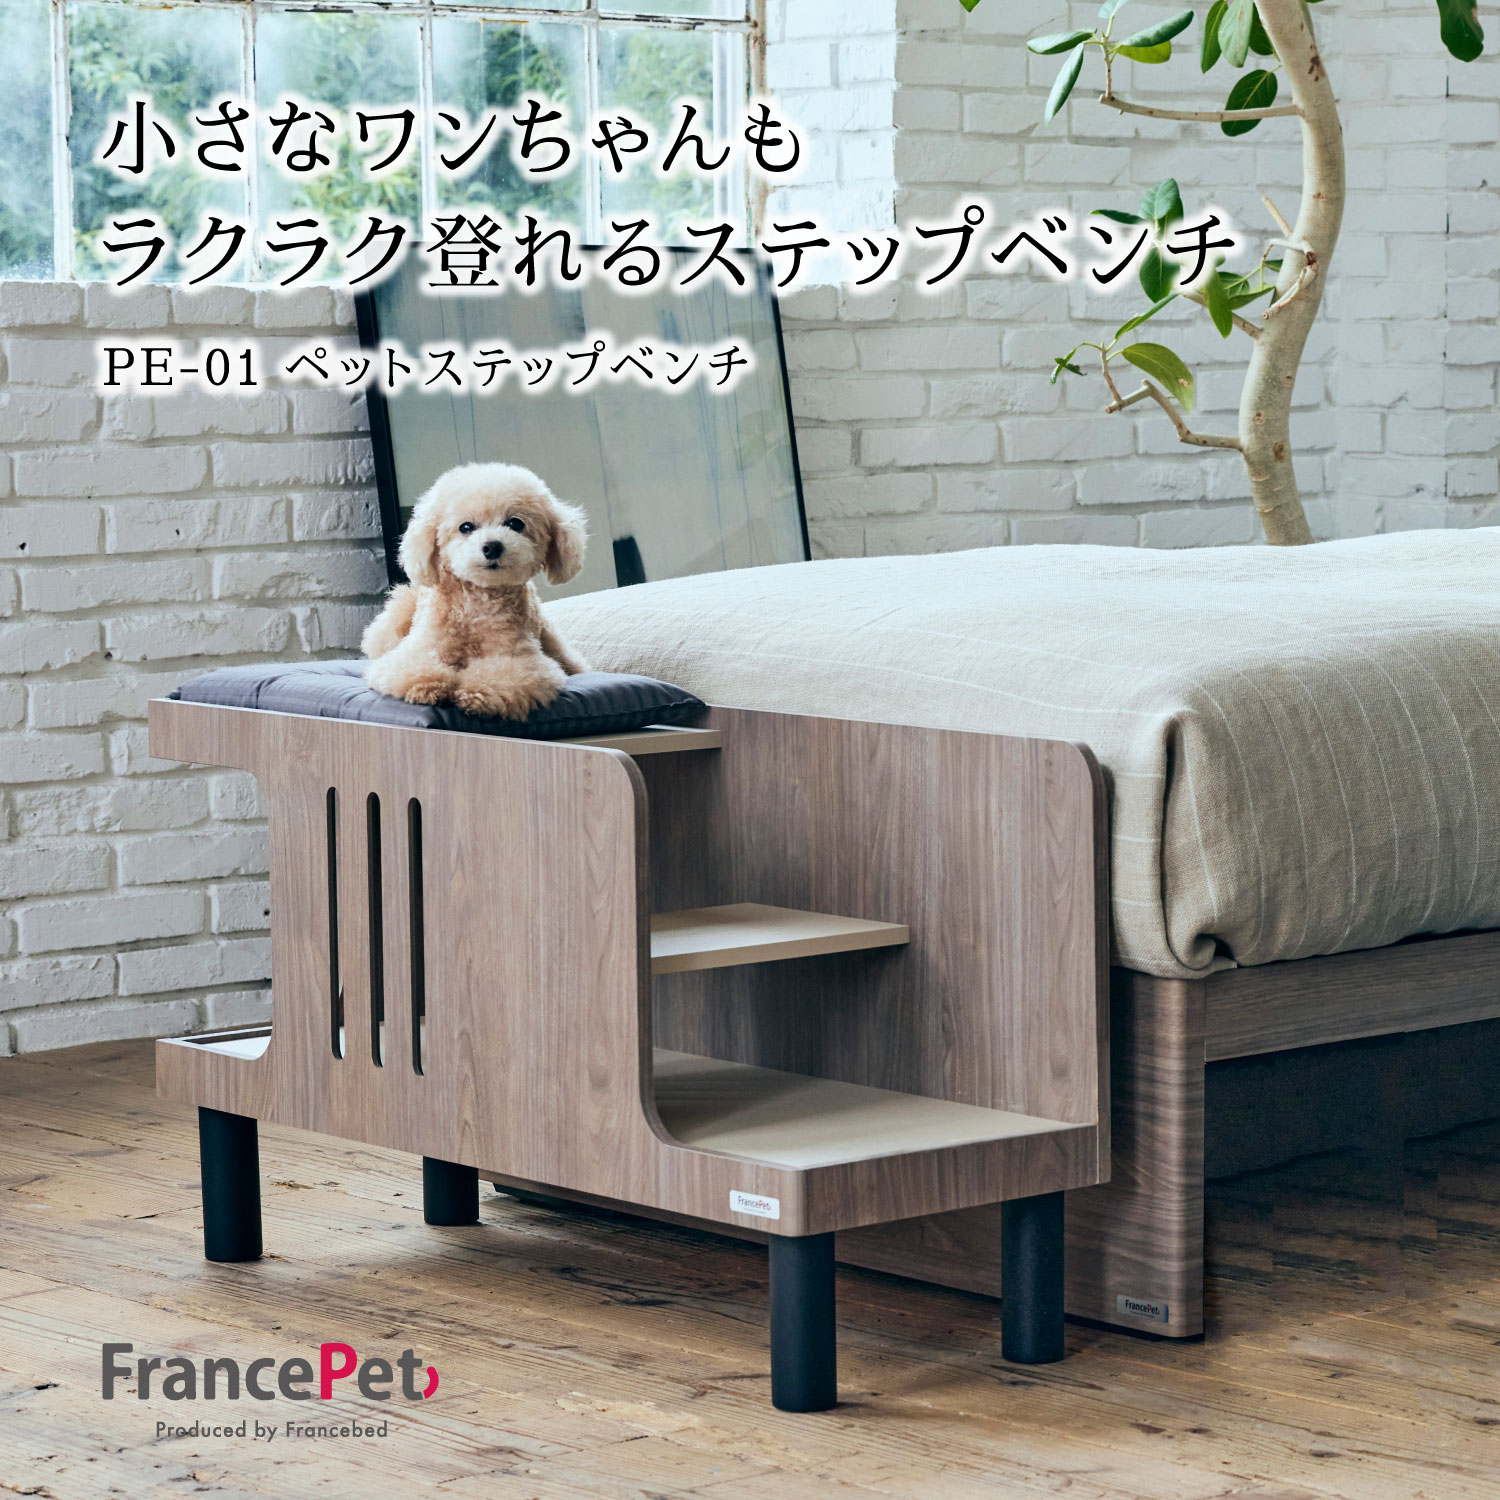 楽天エヒラ家具e-flat楽天市場支店フランスペット ペットステップベンチ Pet Step Bench かわいい 家具 小型犬対応 猫対応 PET-01【FP-5954】